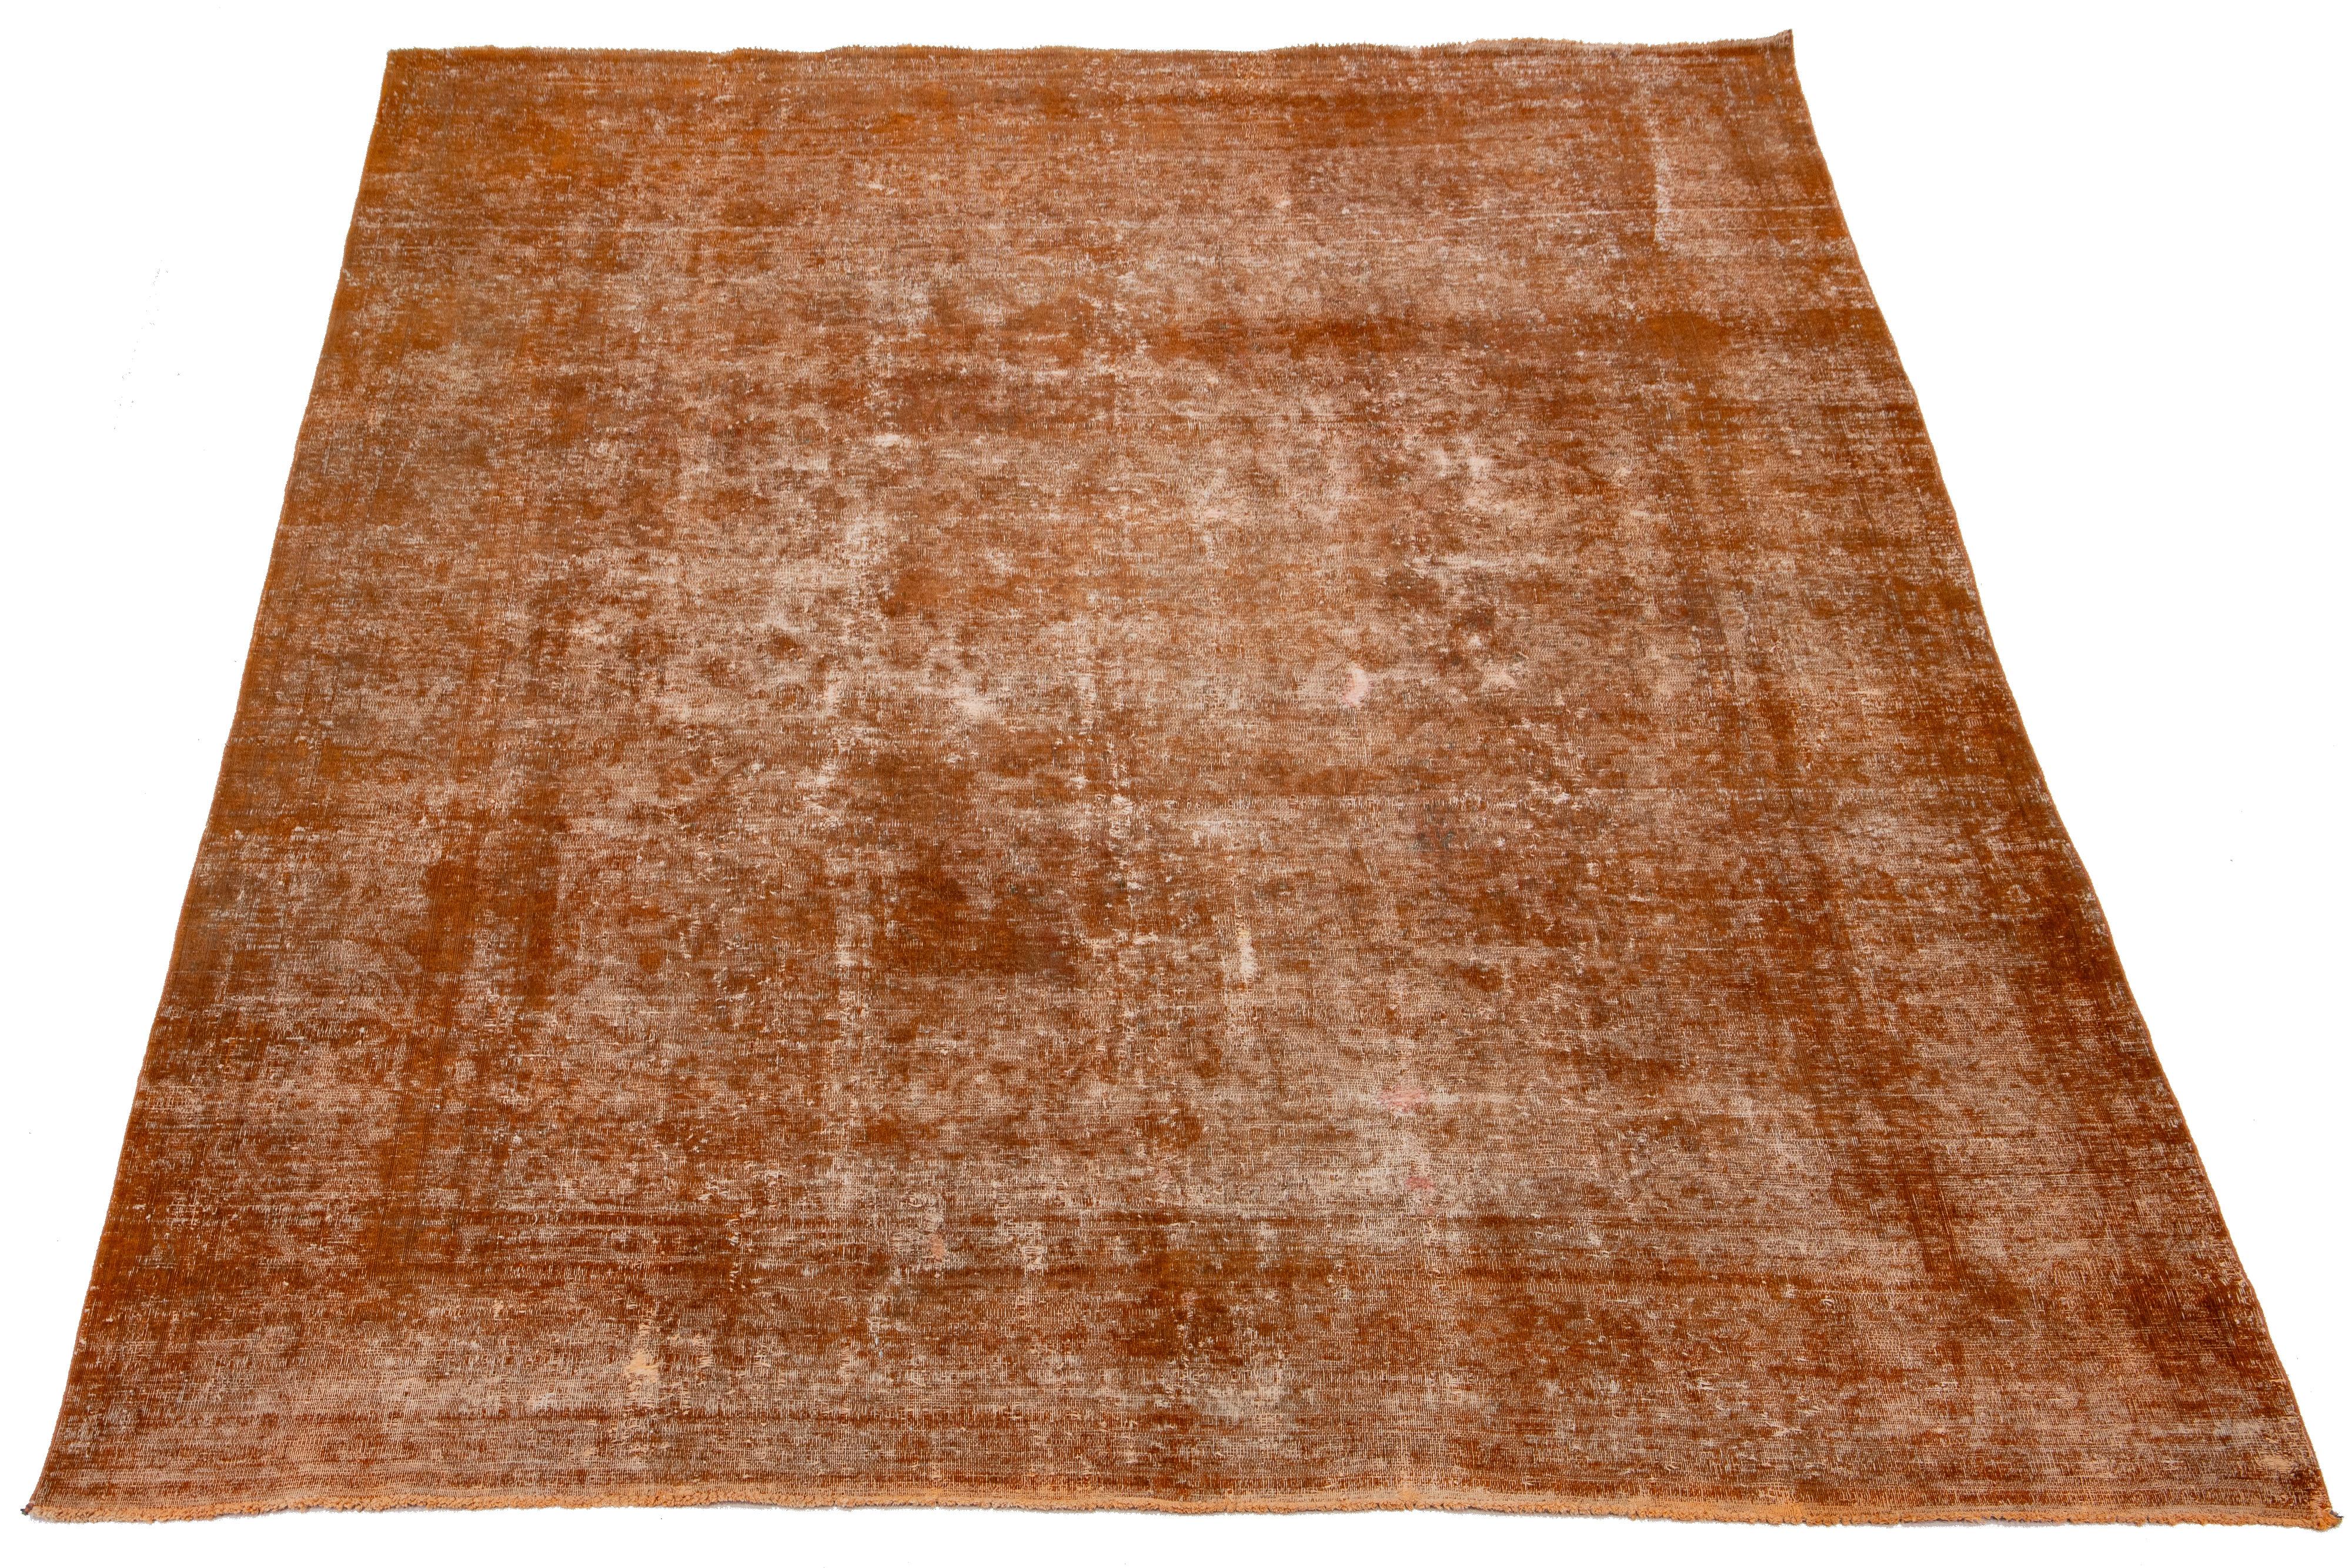 Dieser antike orangefarbene Teppich aus persischer Wolle zeigt ein Allover-Muster mit grauen und braunen Akzenten.

Dieser Teppich misst 9'5'' x 12'4